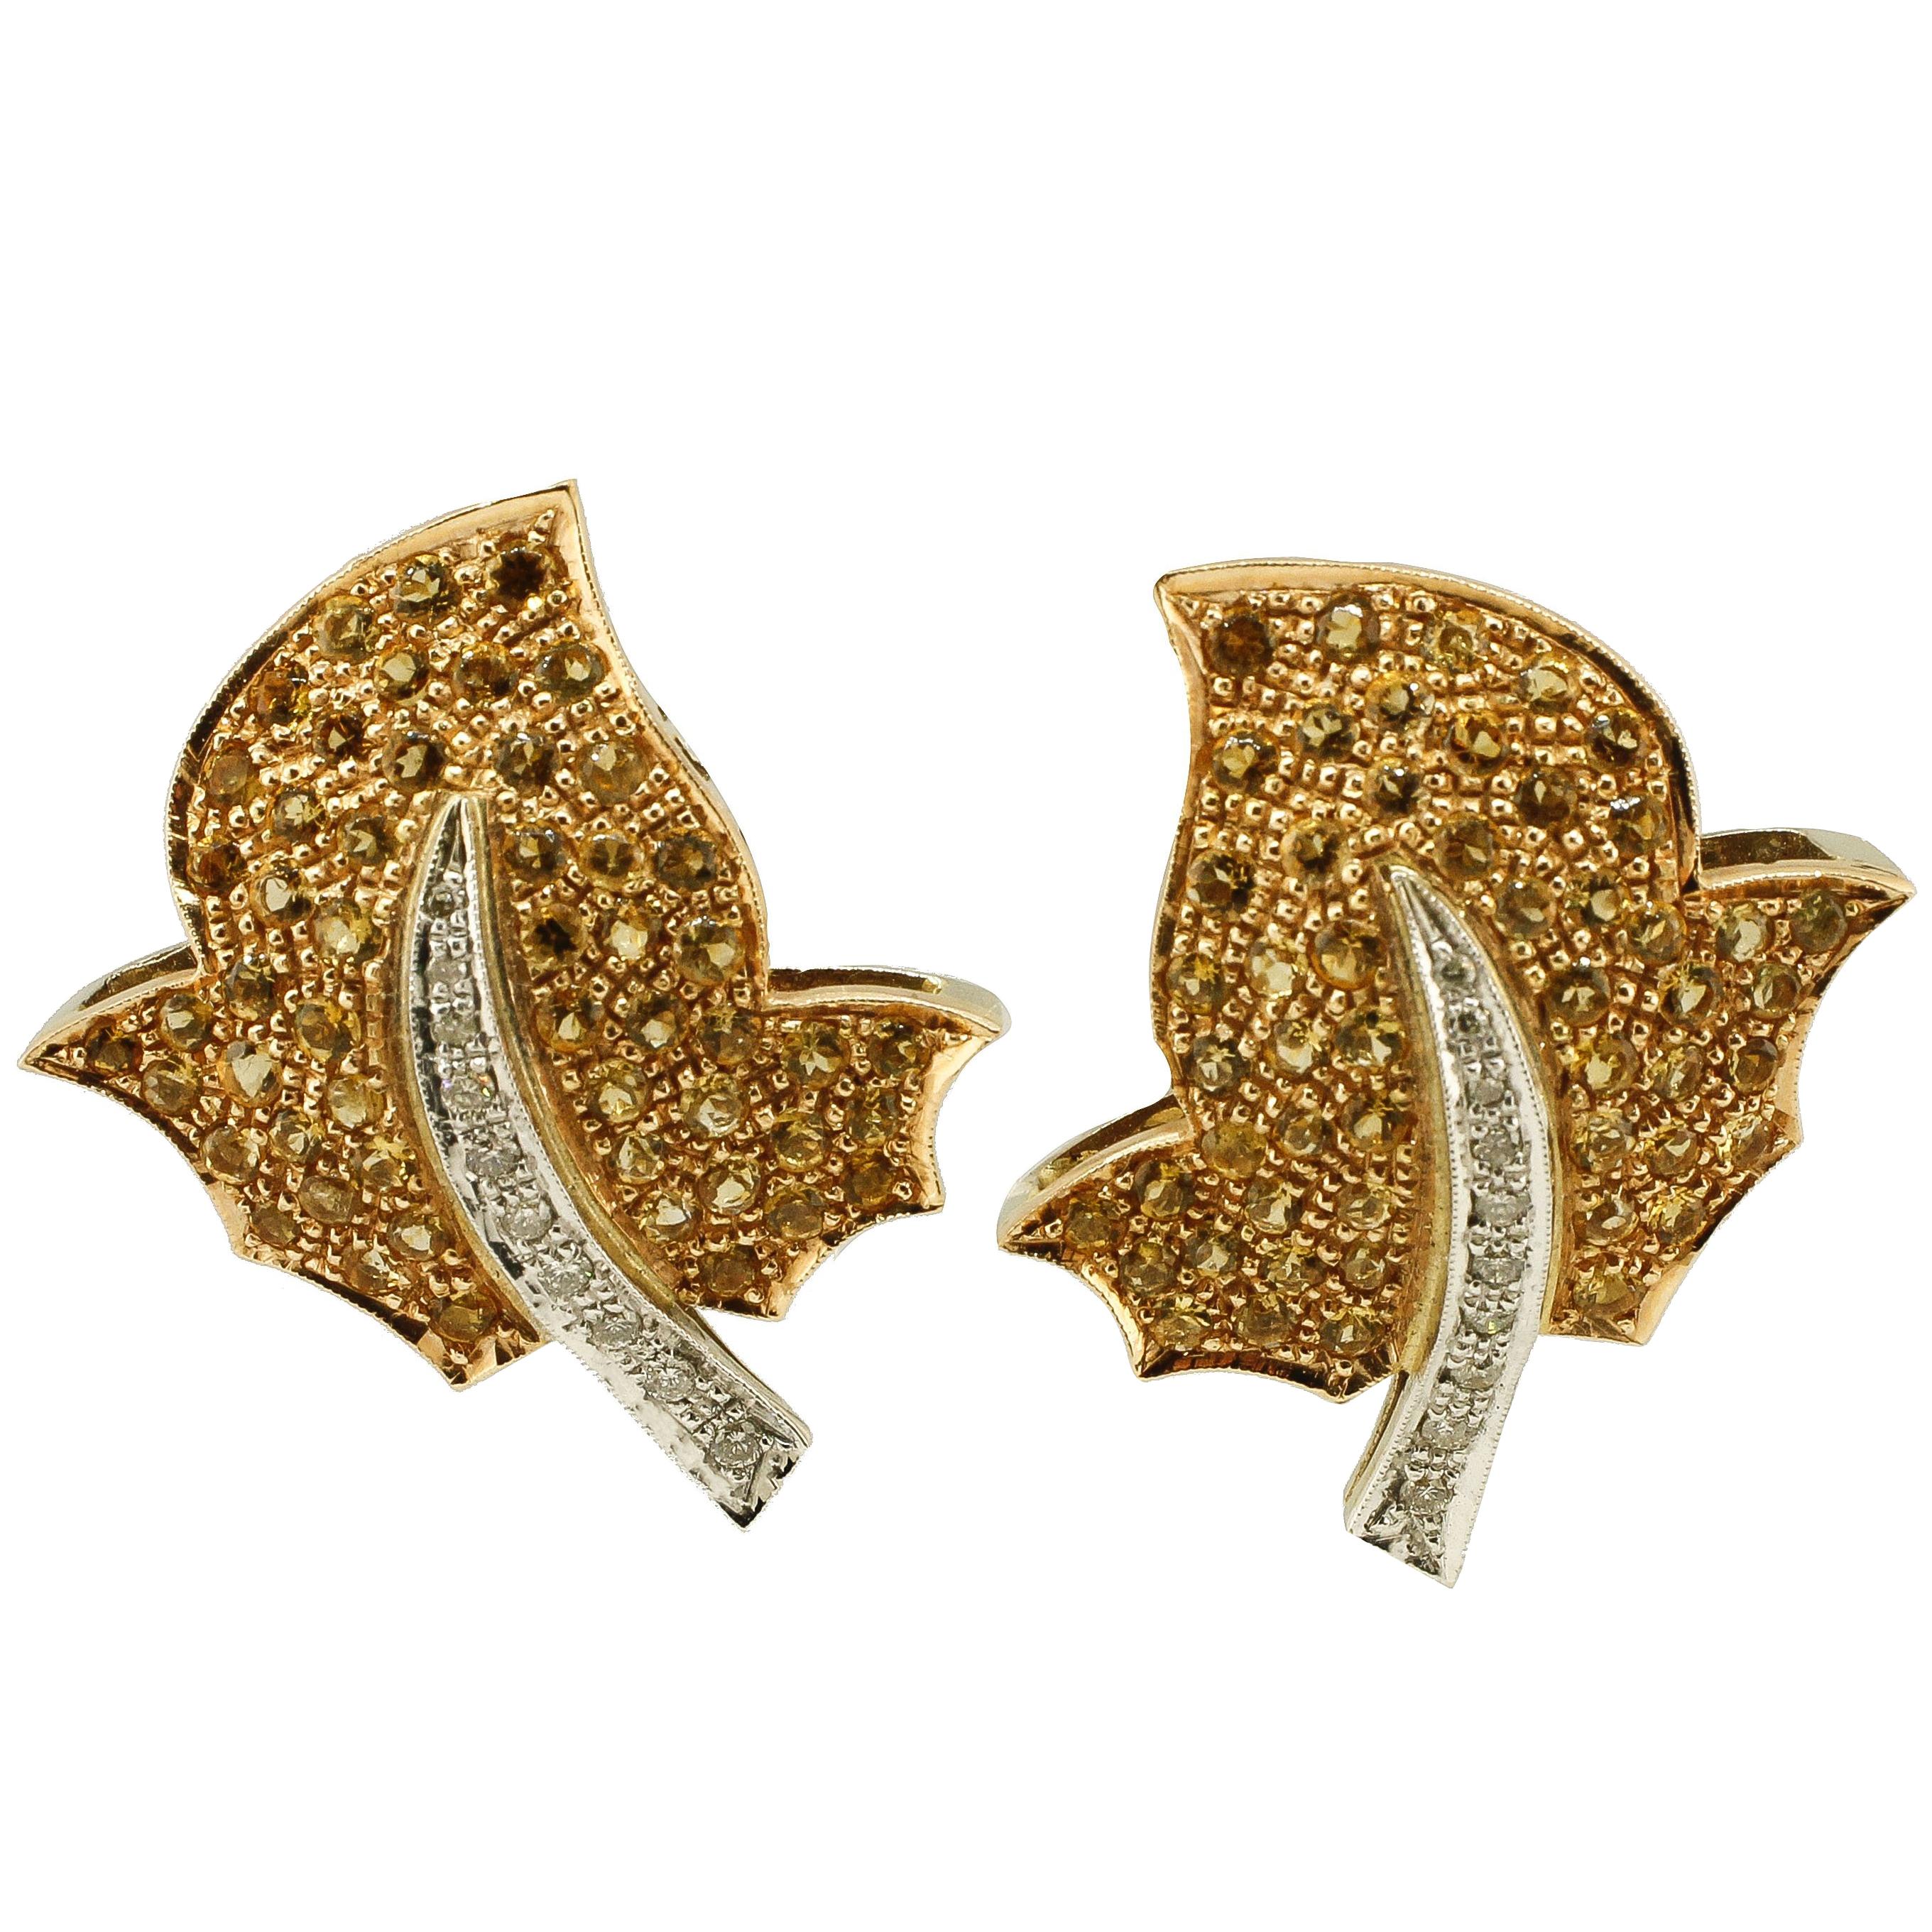  Topaz Diamond Gold Earrings